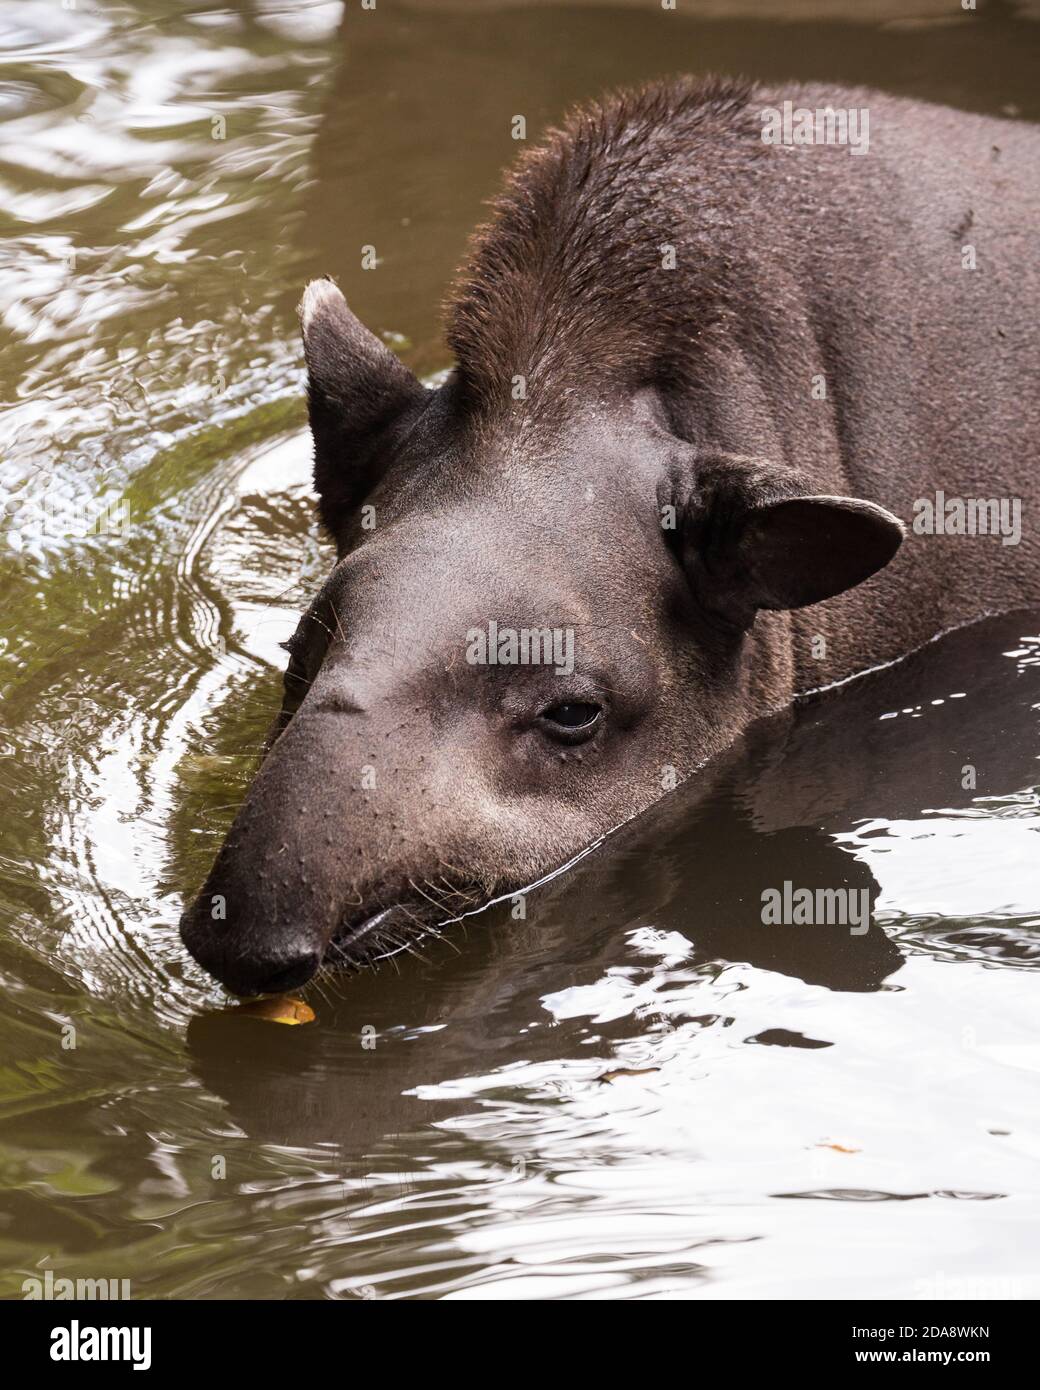 Le Tapir sud-américain, le Tapir brésilien ou le Tapir des basses terres, Tapirus terrestris, est le plus grand mammifère terrestre indigène de l'Amazonie. Les tapirs dépensent Banque D'Images